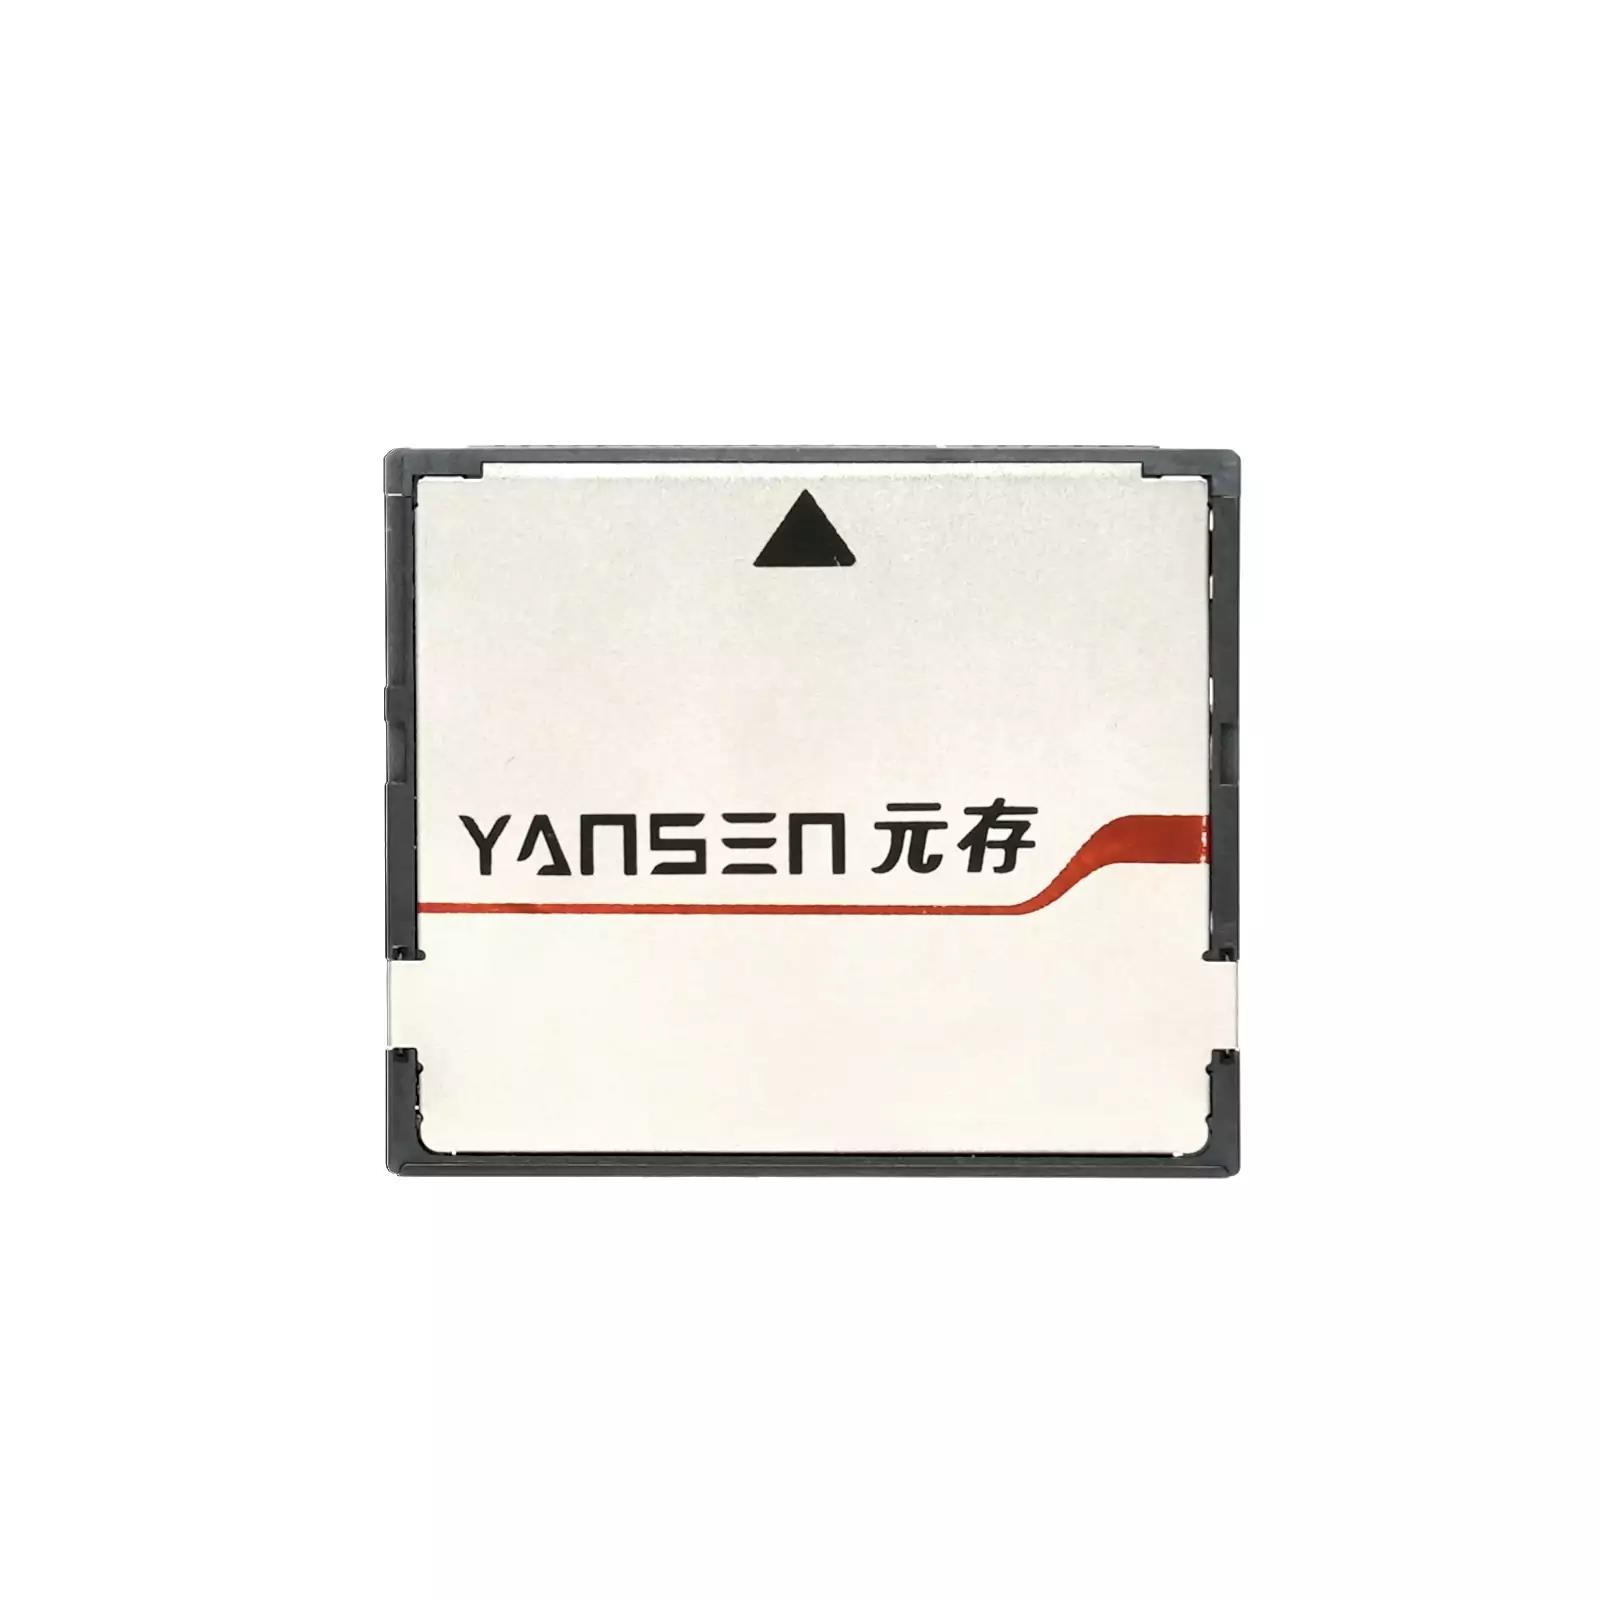 YSCS-64